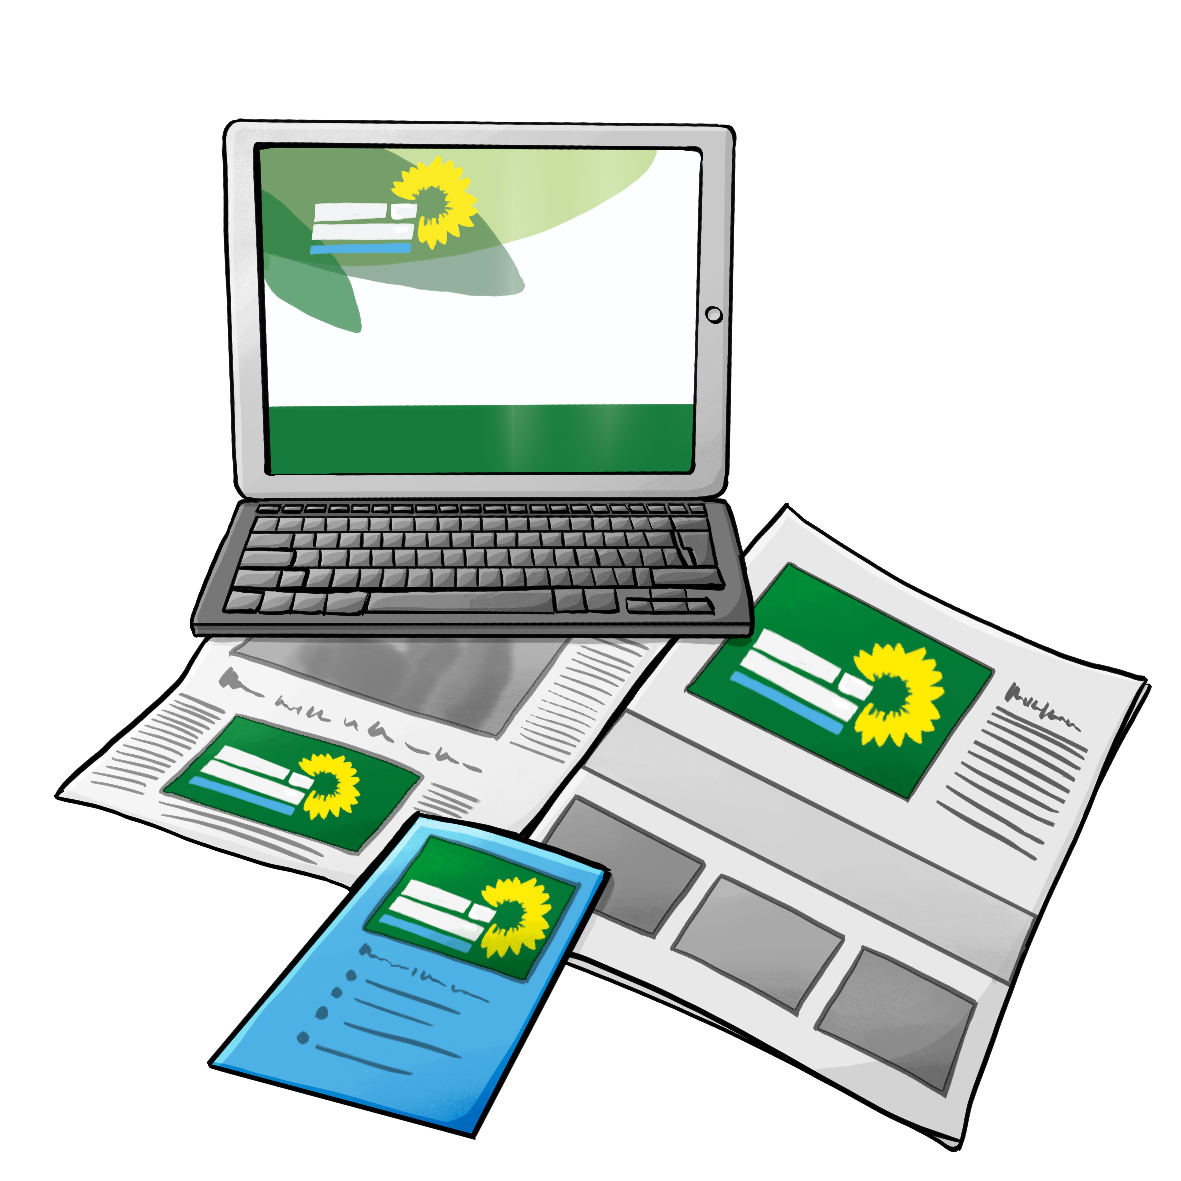 Ein Laptop steht auf einer Zeitung, darauf liegt ein Flyer. Auf dem Laptop, der Zeitung und dem Flyer ist das gleiche Logo zu sehen: ein grünes Rechteck mit einer gelben Sonnenblume. 